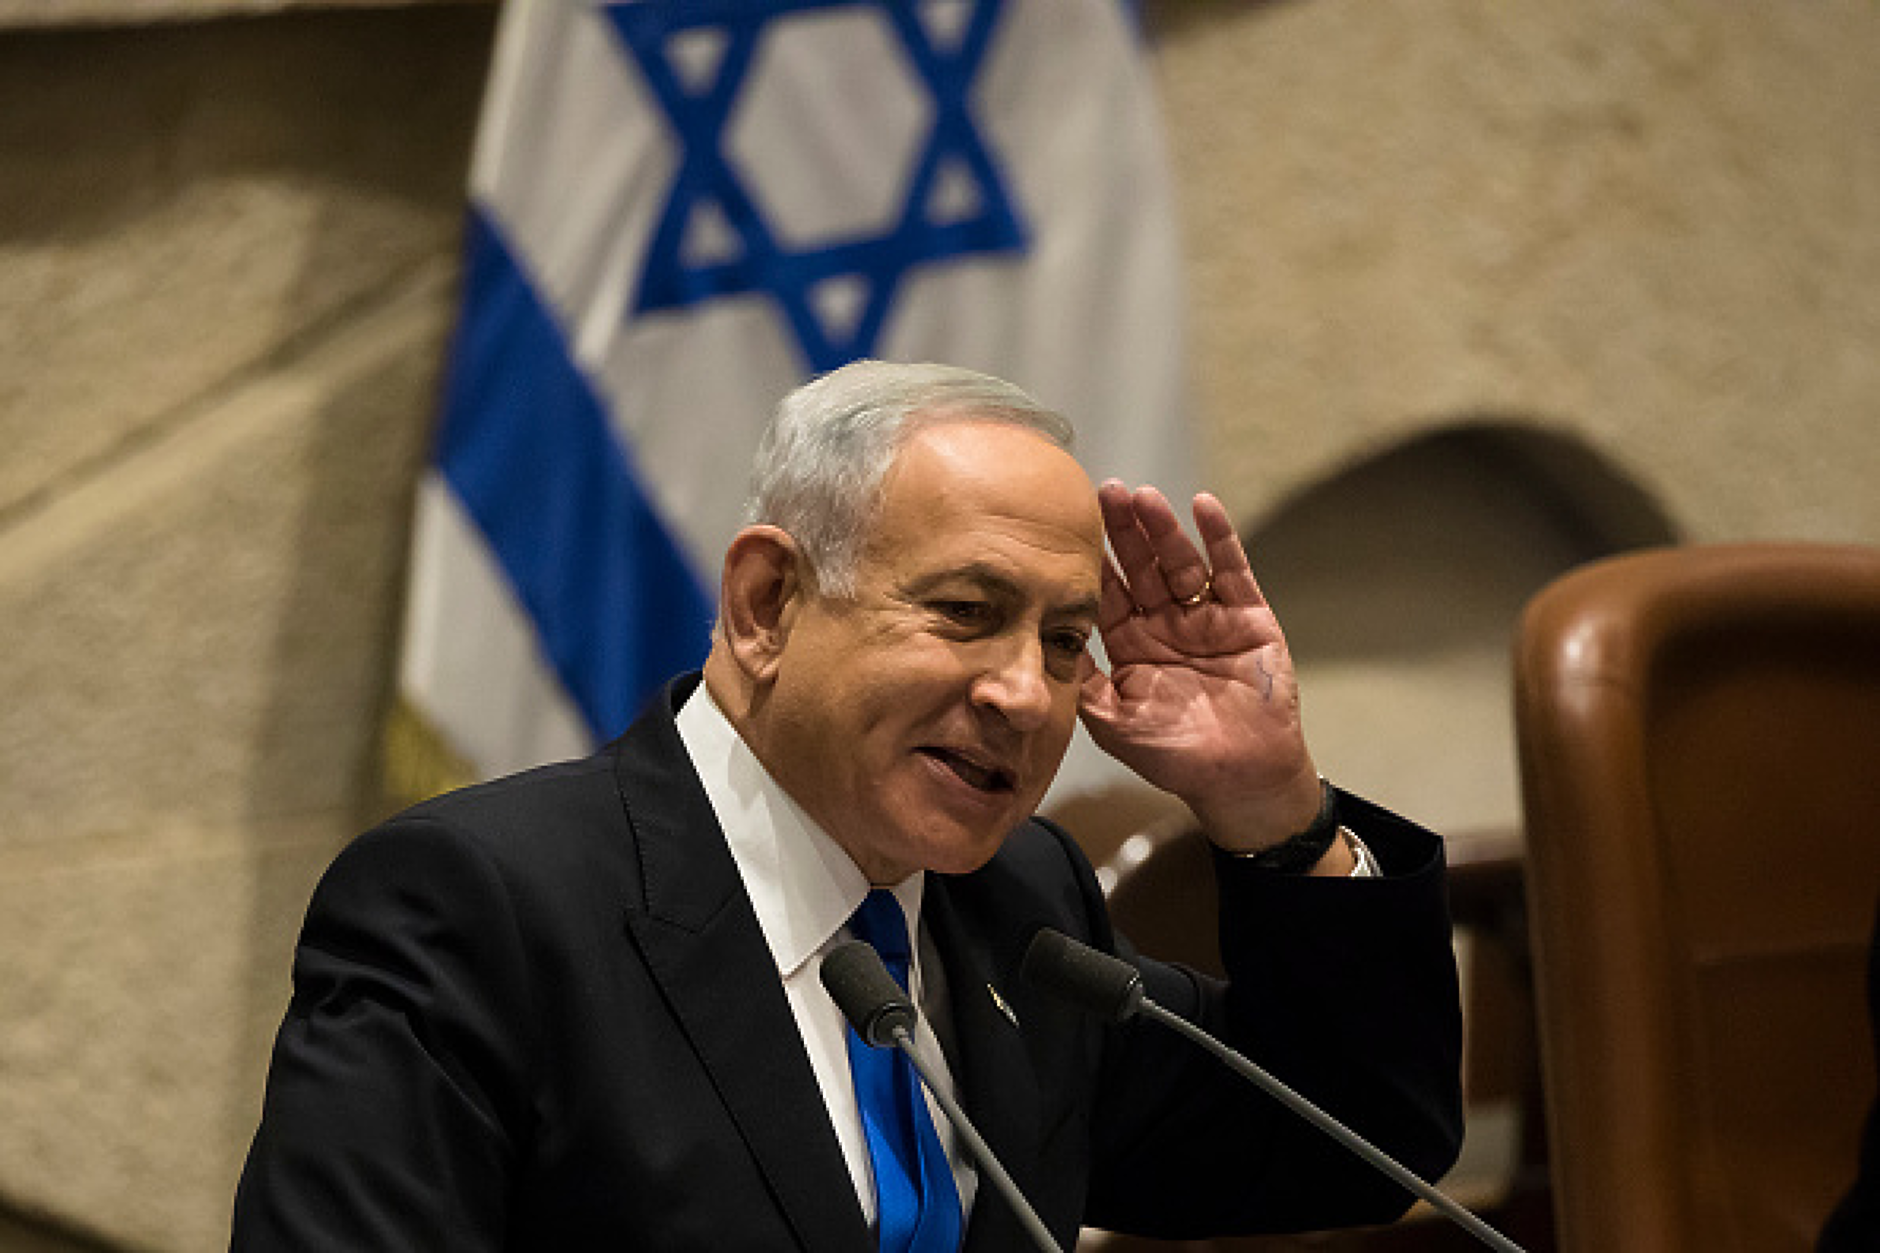 Нетаняху обеща пред Блинкън смачкване на Хамас, поне 25 американци са загинали в Израел